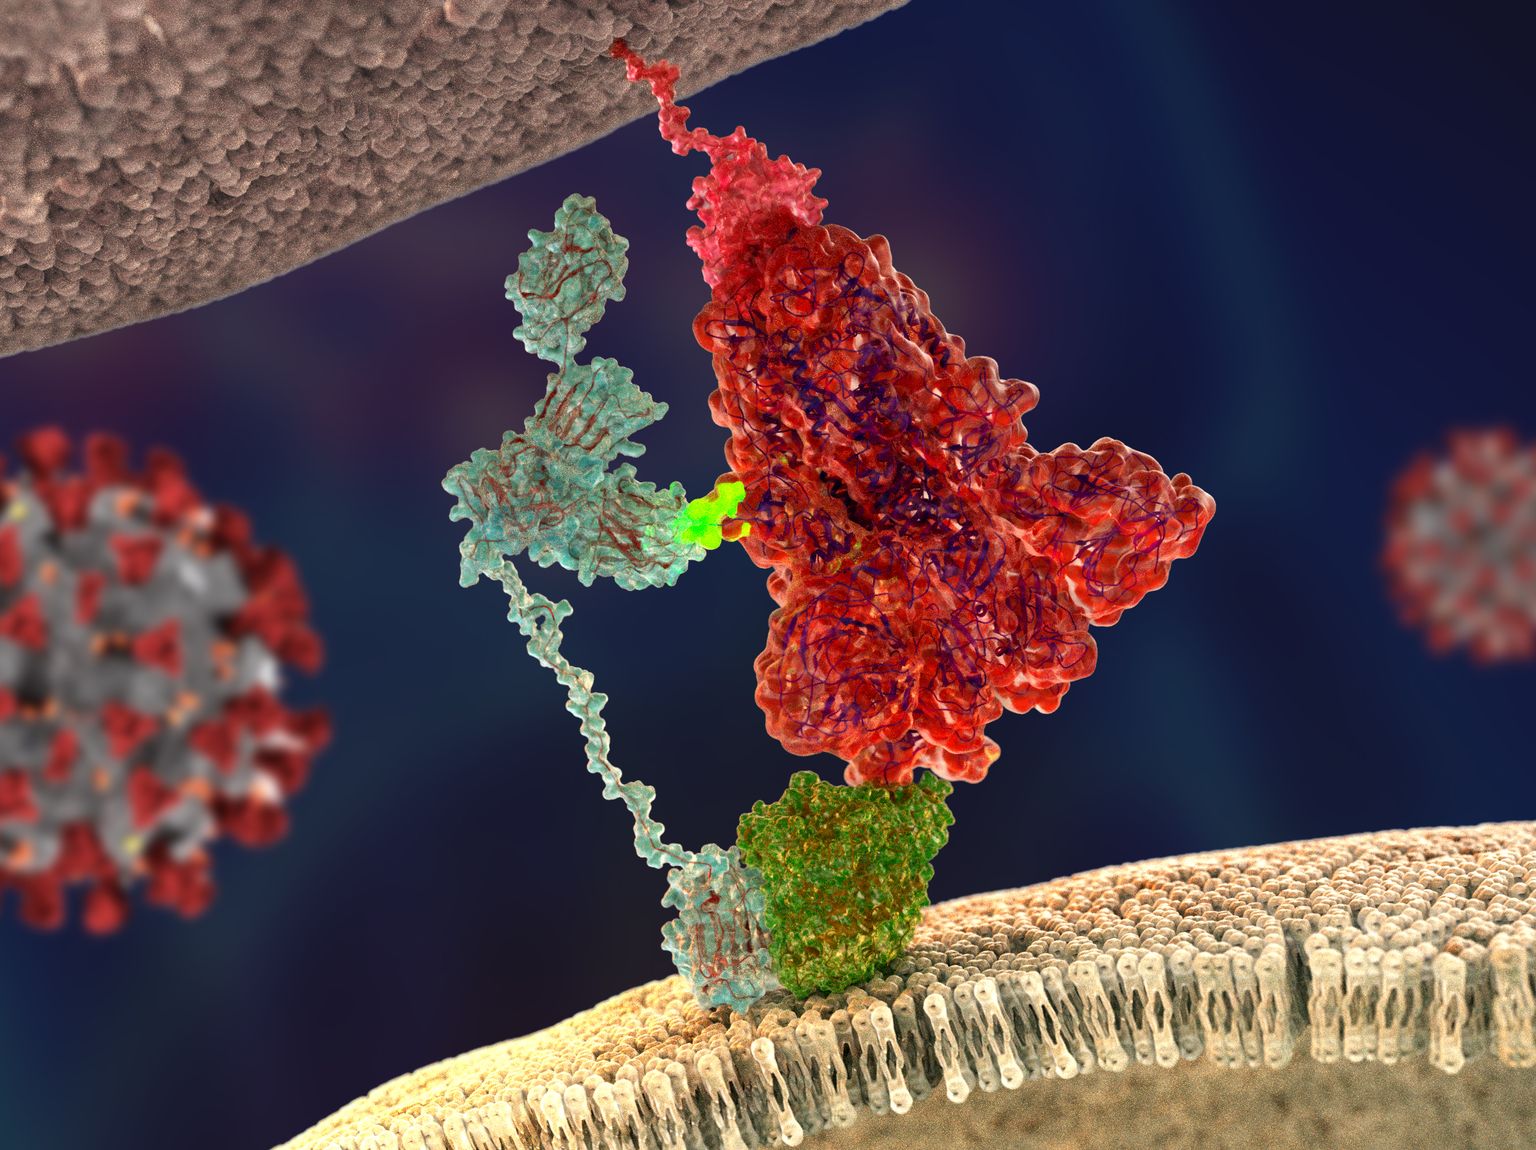 Koroonaviiruse ogavalk (kujutatud punasega) seondumas pärast furiini poolt lõikamist neuropiliin-1 valguga. Erkroheline sillake kujutab furiiniga lõikamise tagajärjel tekkivat CendR peptiidi. Värsked teadustööd näitavad, et see neuropiliin mängib viiruse inimese rakkudesse sisenemisel tõenäoselt suurt rolli, mida keegi varem ei teadnud.